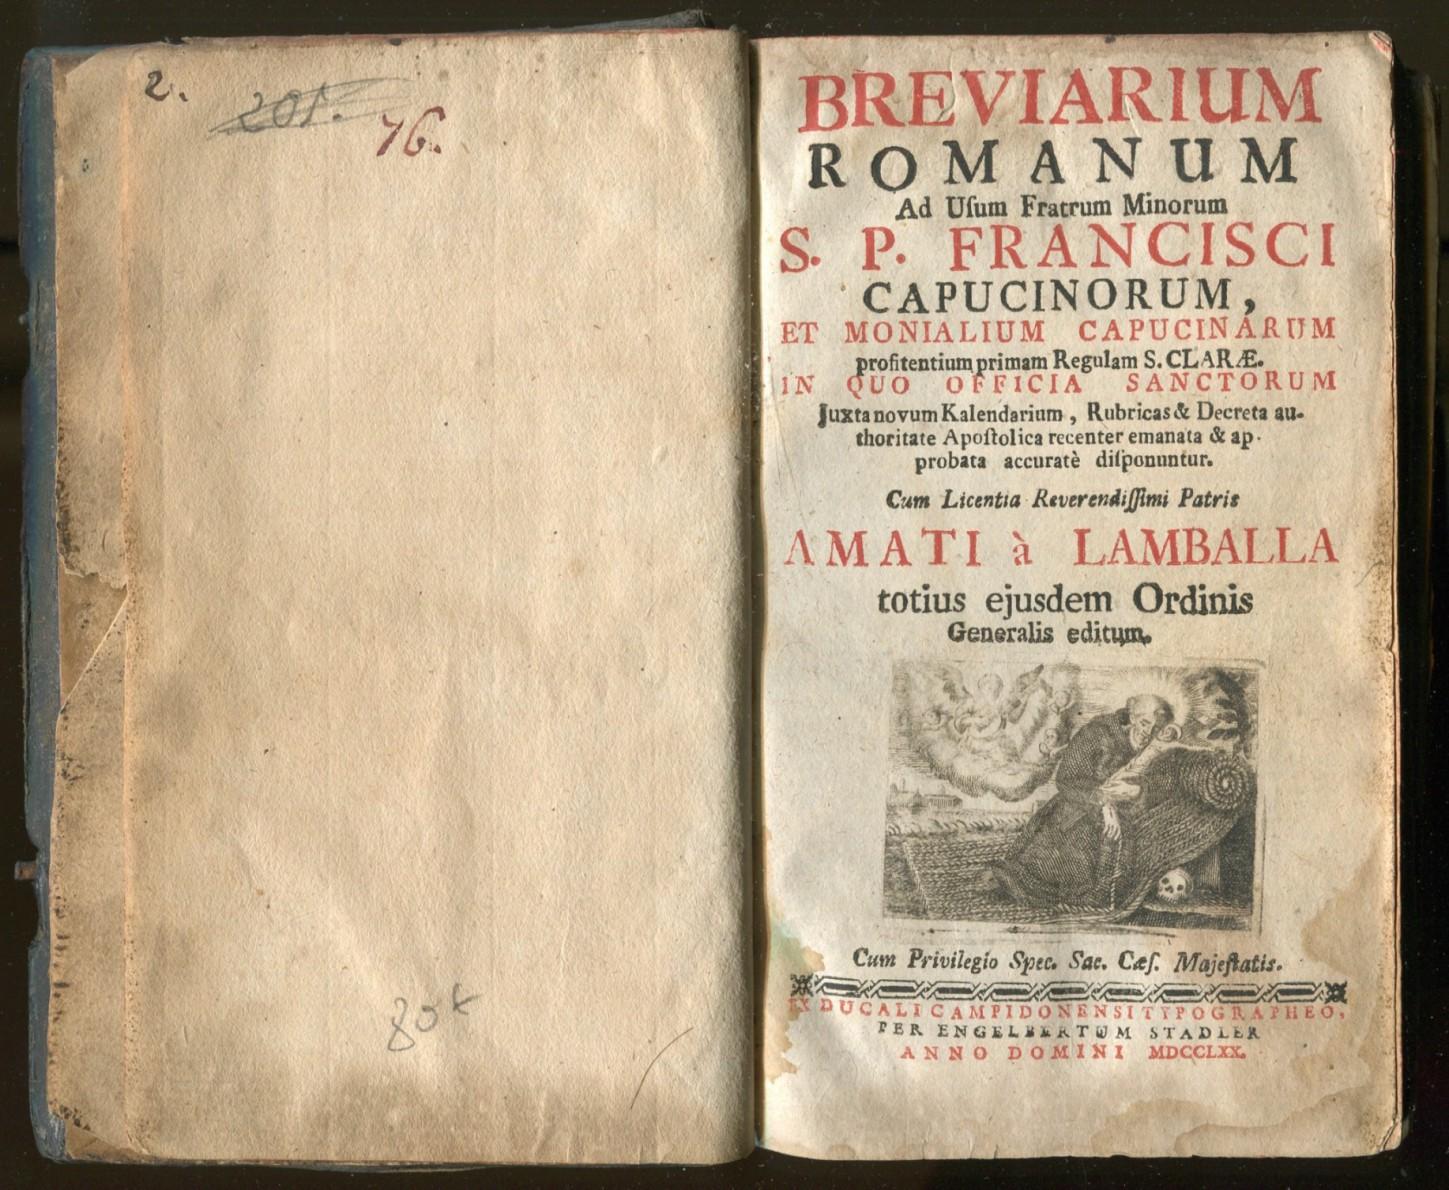 Breviarium Romanum Usum Fratrum Minorum Abebooks